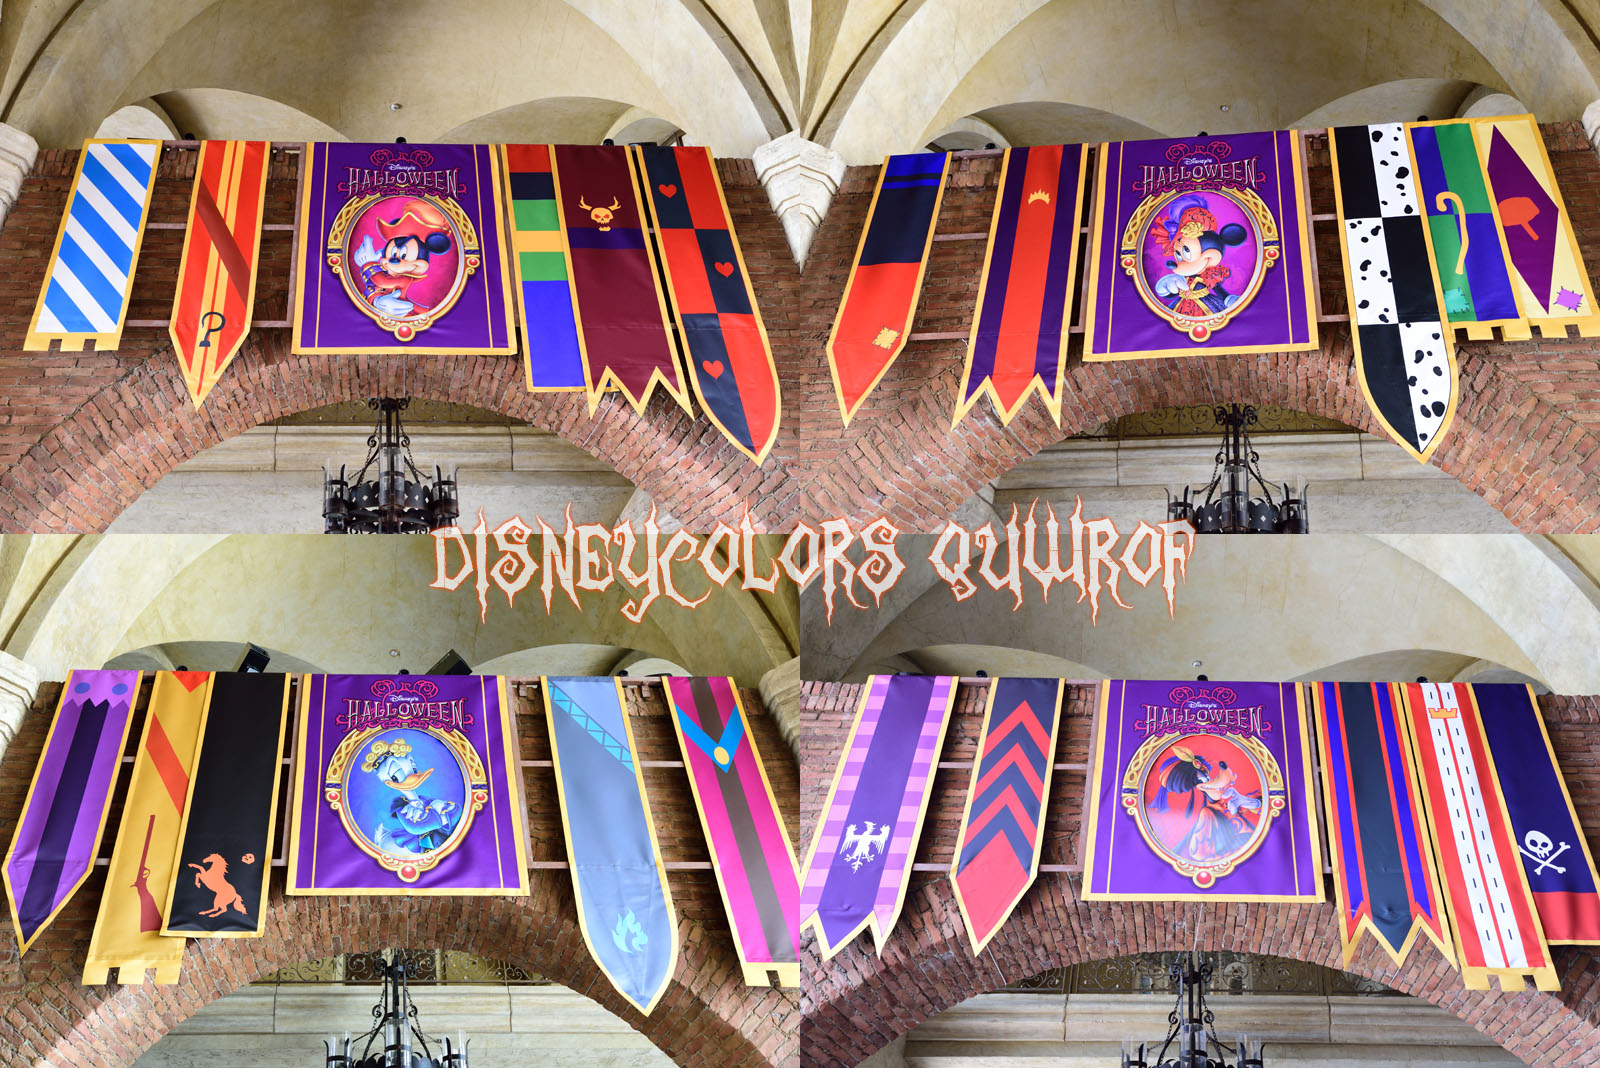 ヴィランズが大集結 ディズニーシー ディズニー ハロウィーン15 デコレーション徹底紹介 Disney Colors Blog